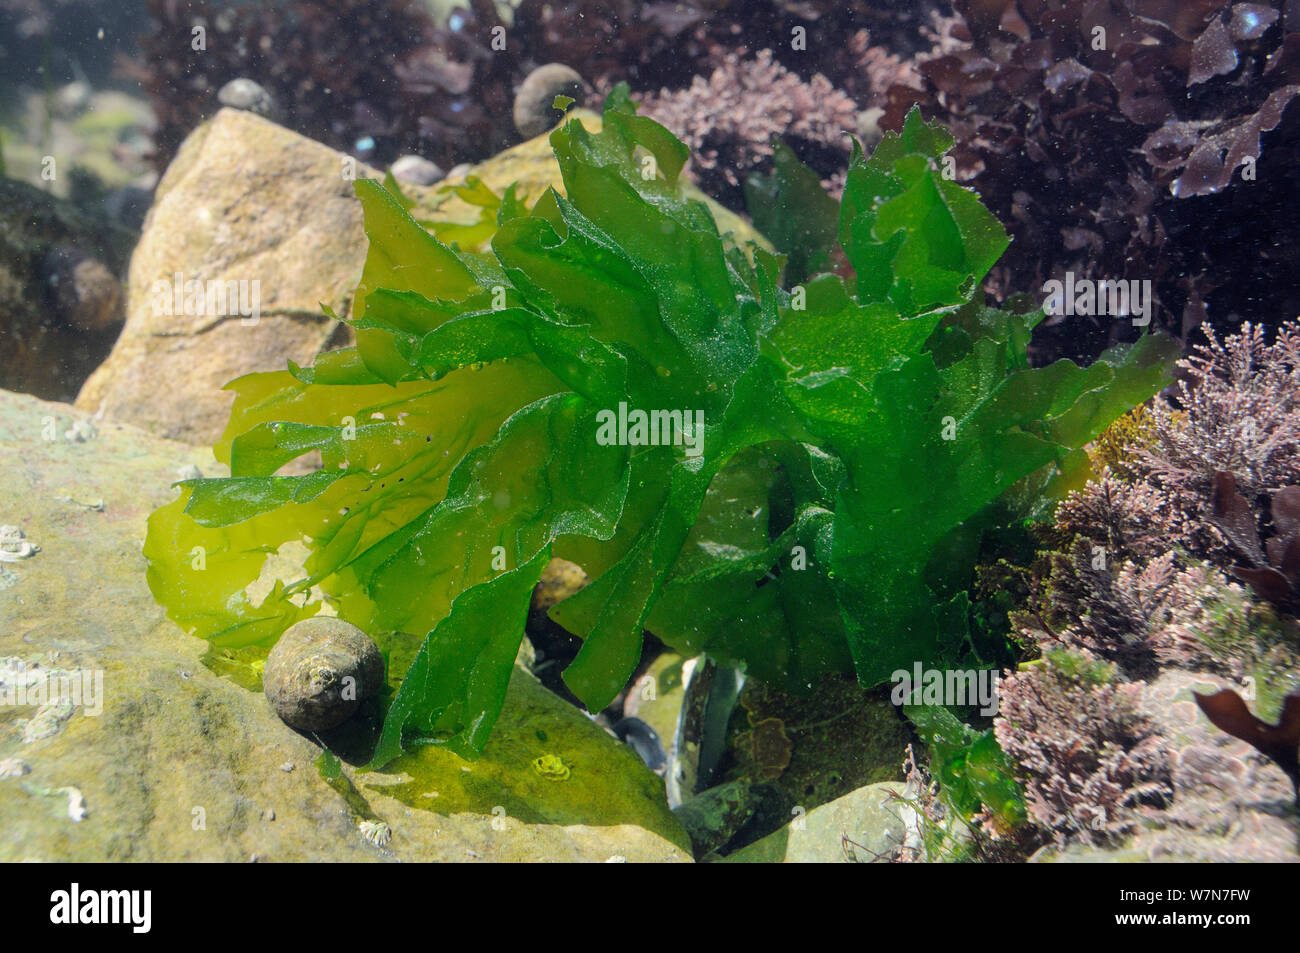 Lattuga di mare / verde conca (Ulva lactuca) cresce in una rockpool accanto Coralweed (Corallina officinalis). Rhossili, La Penisola di Gower, UK, Luglio. Foto Stock